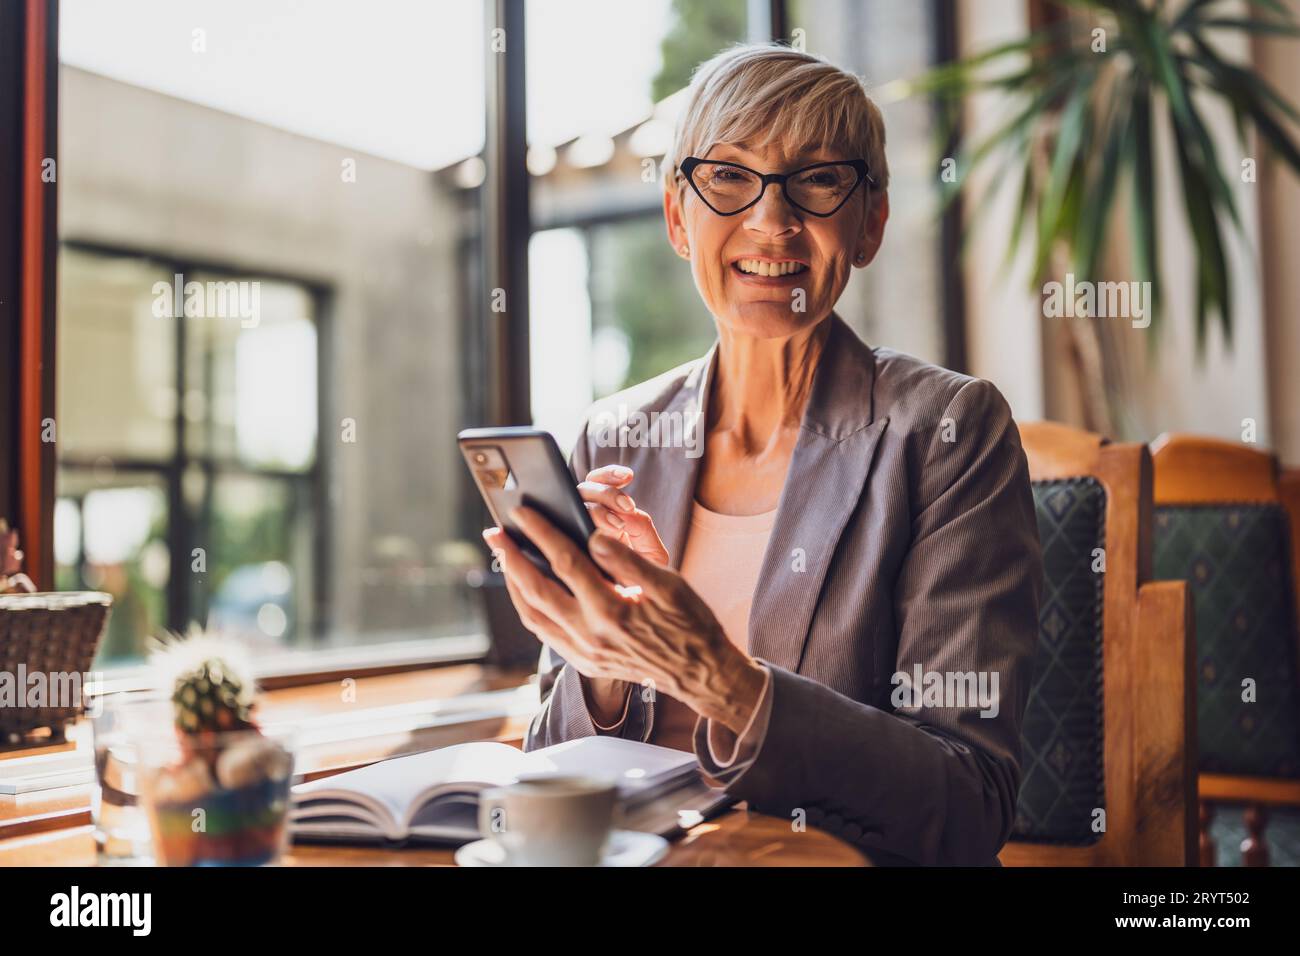 Una donna matura è seduta in una caffetteria e si sta rilassando. Sta bevendo caffè e sta usando lo smartphone. Foto Stock